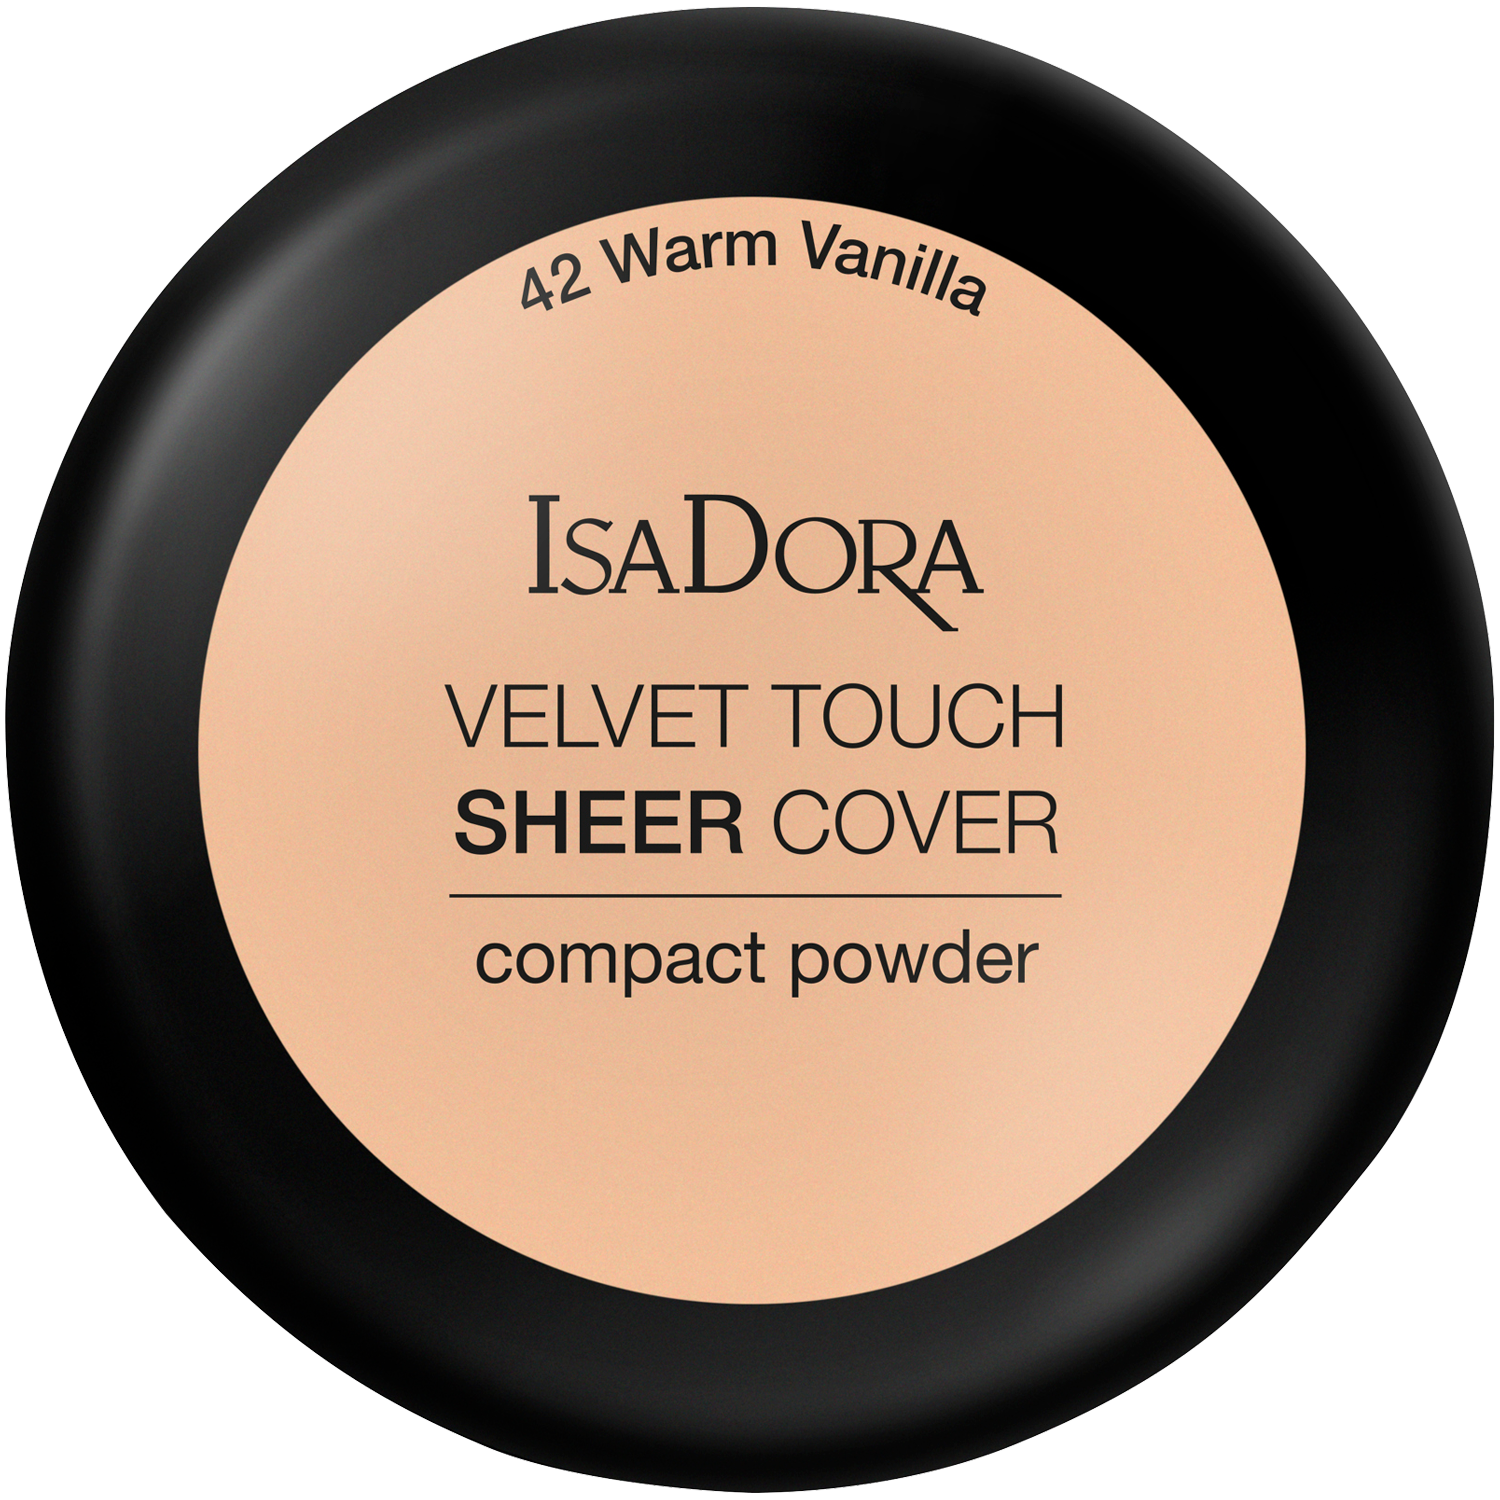 Пудра для лица 42 теплая ваниль Isadora Velvet Touch Sheer Cover, 7,5 гр пудра компактная spf 20 isadora velvet touch ultra cover compact powder 10 гр